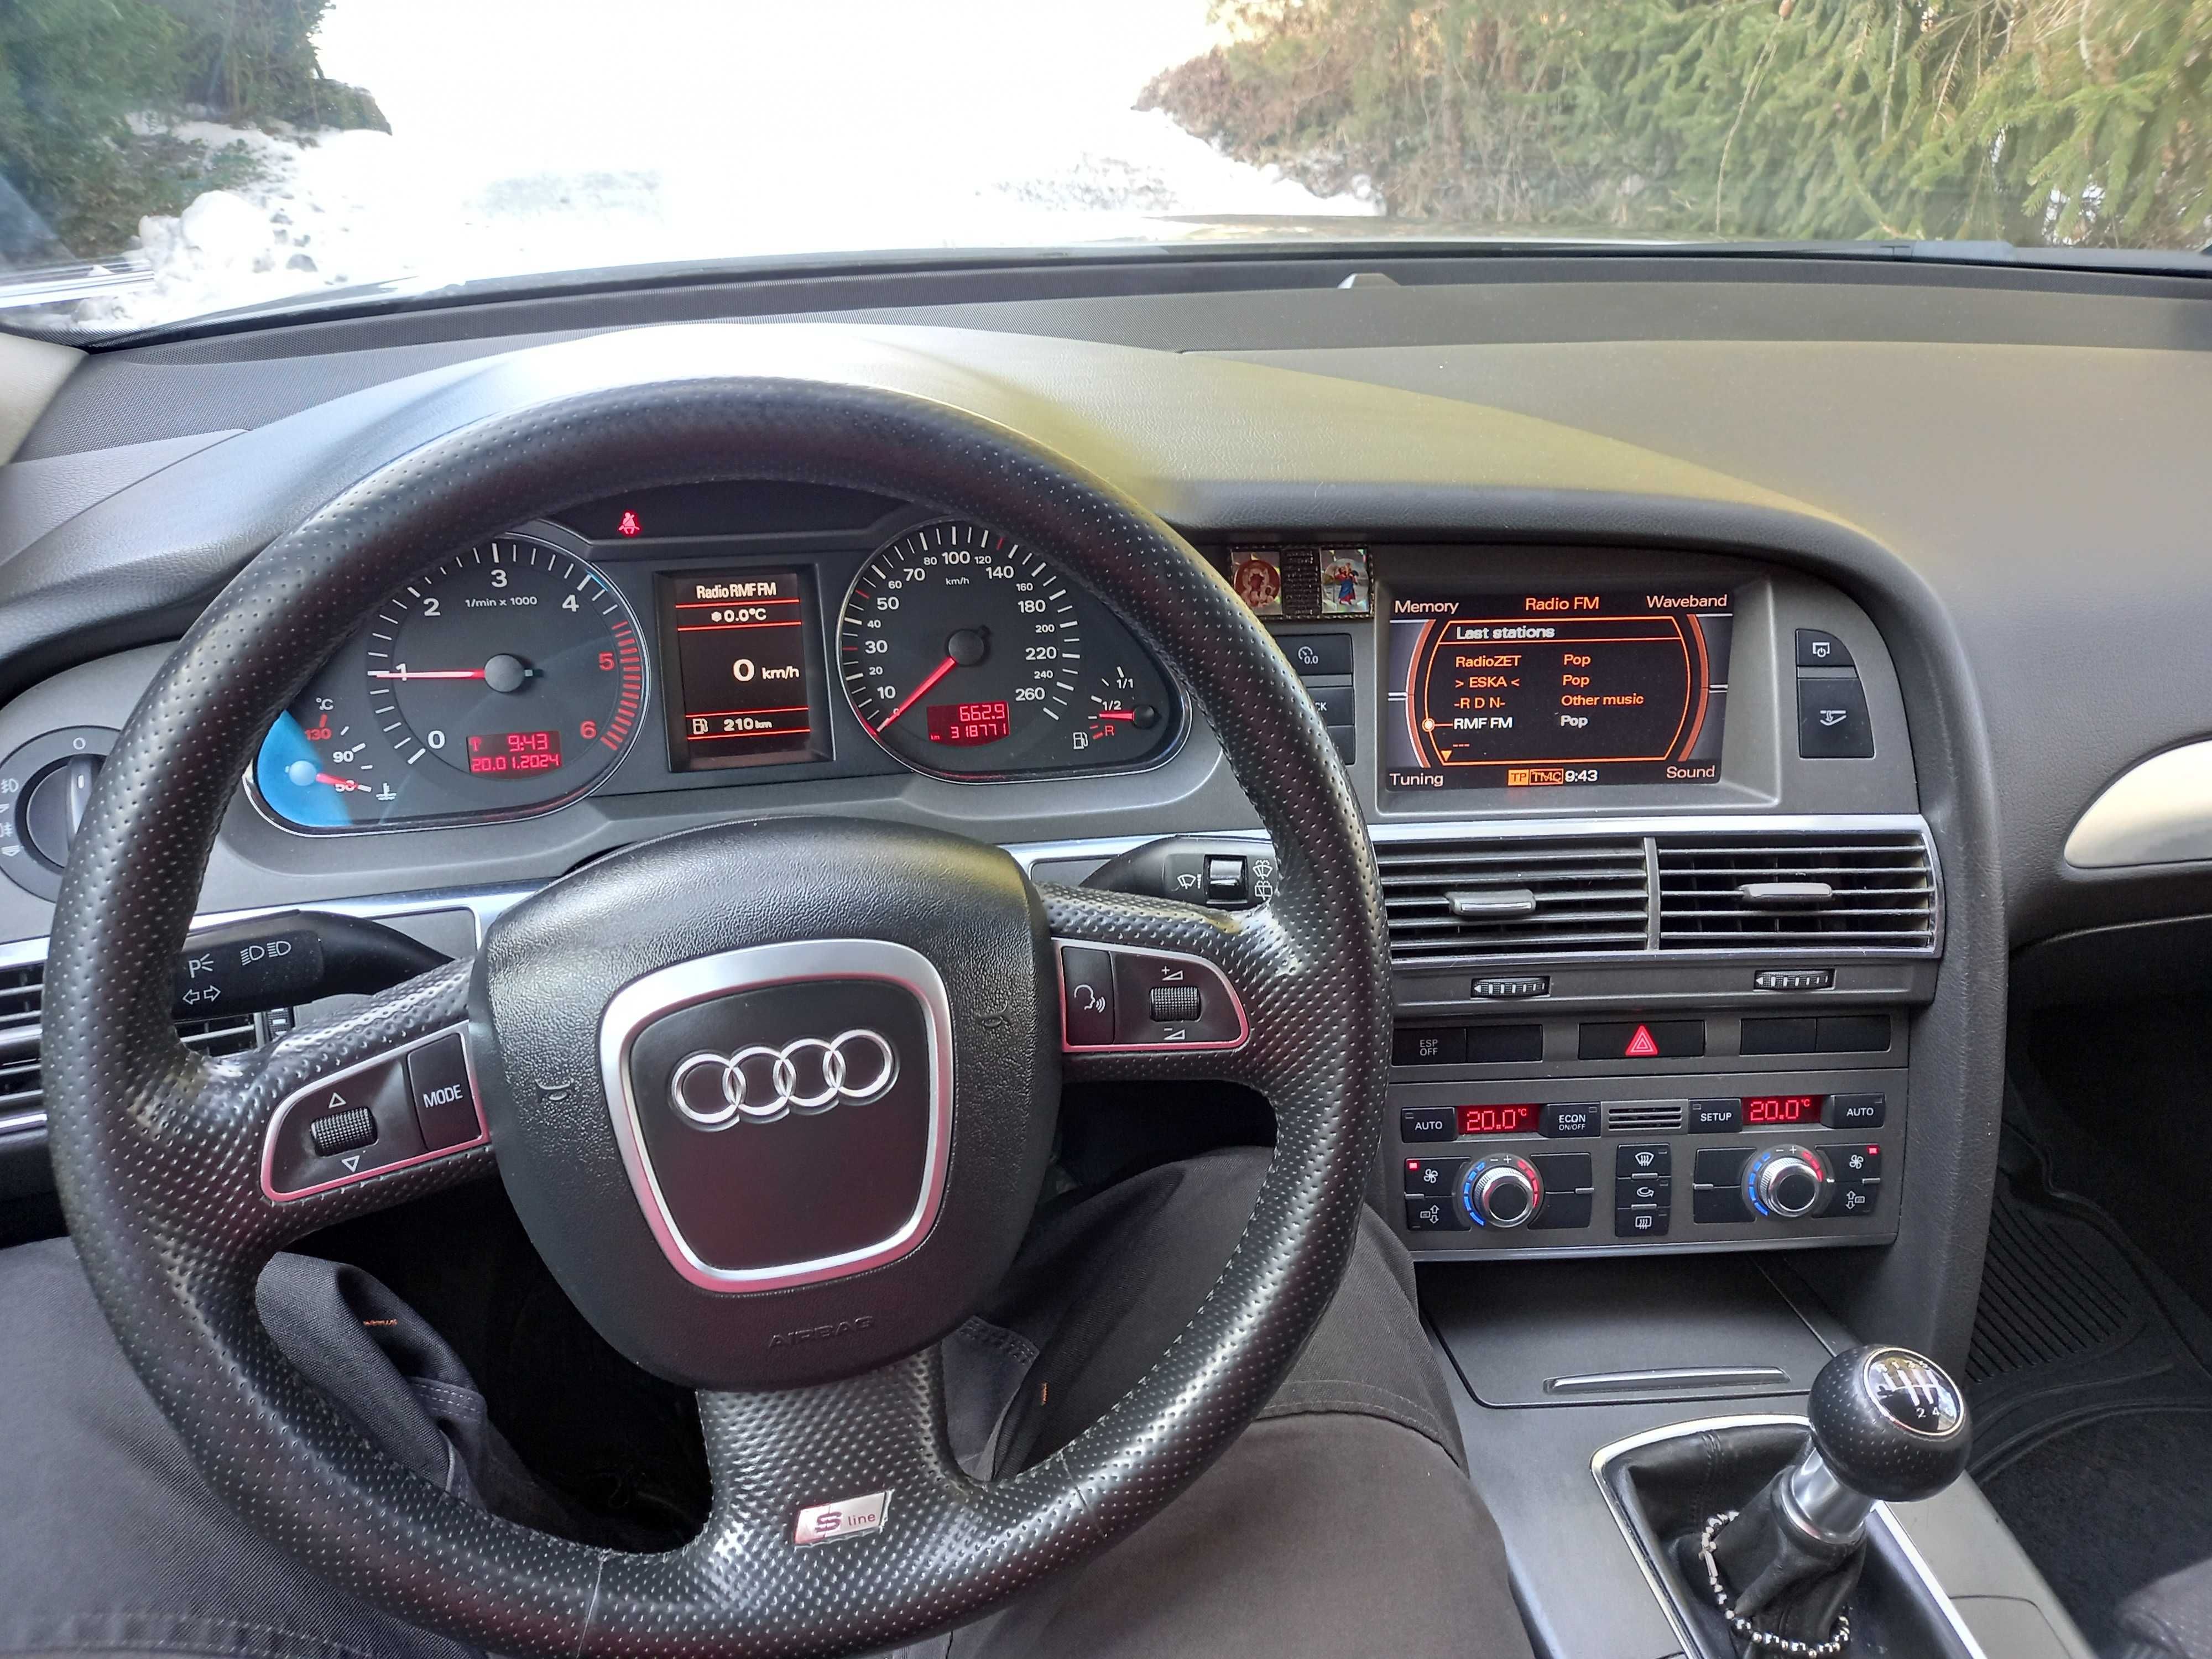 Audi A6 C6 - 2.0 TDI - 170 KM